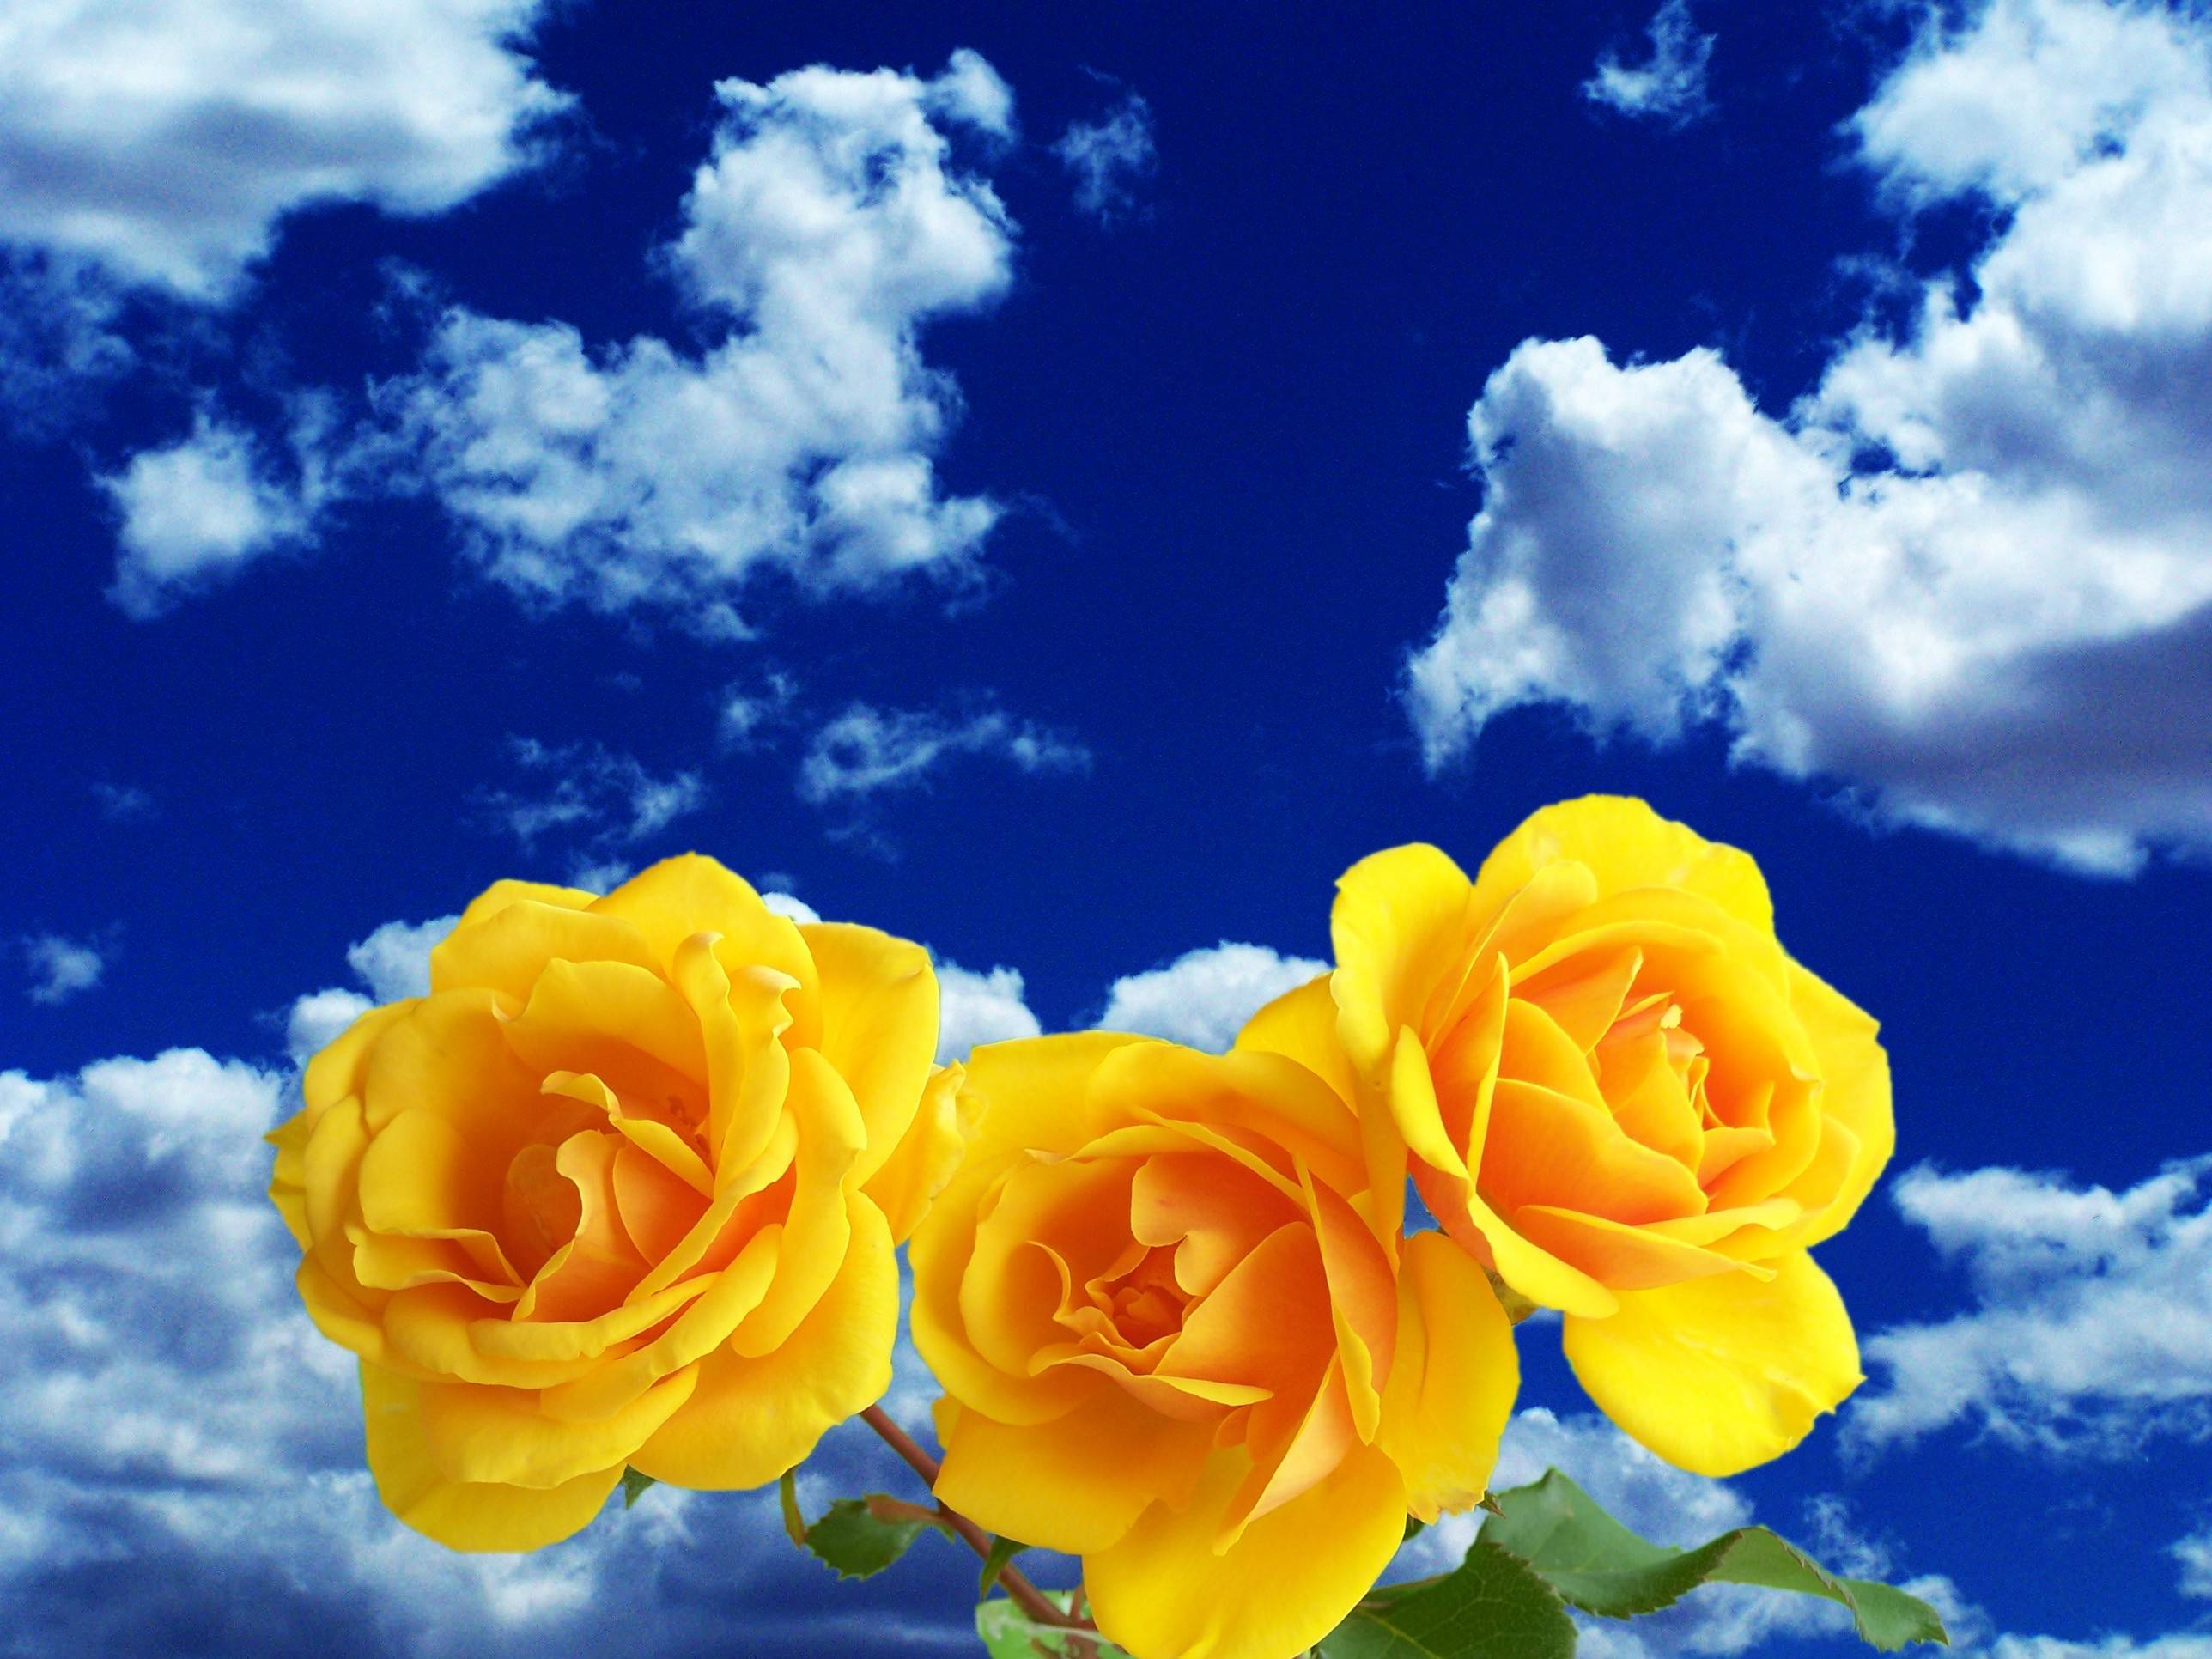 Фото цветок цветы желтые цветы - бесплатные картинки на Fonwall